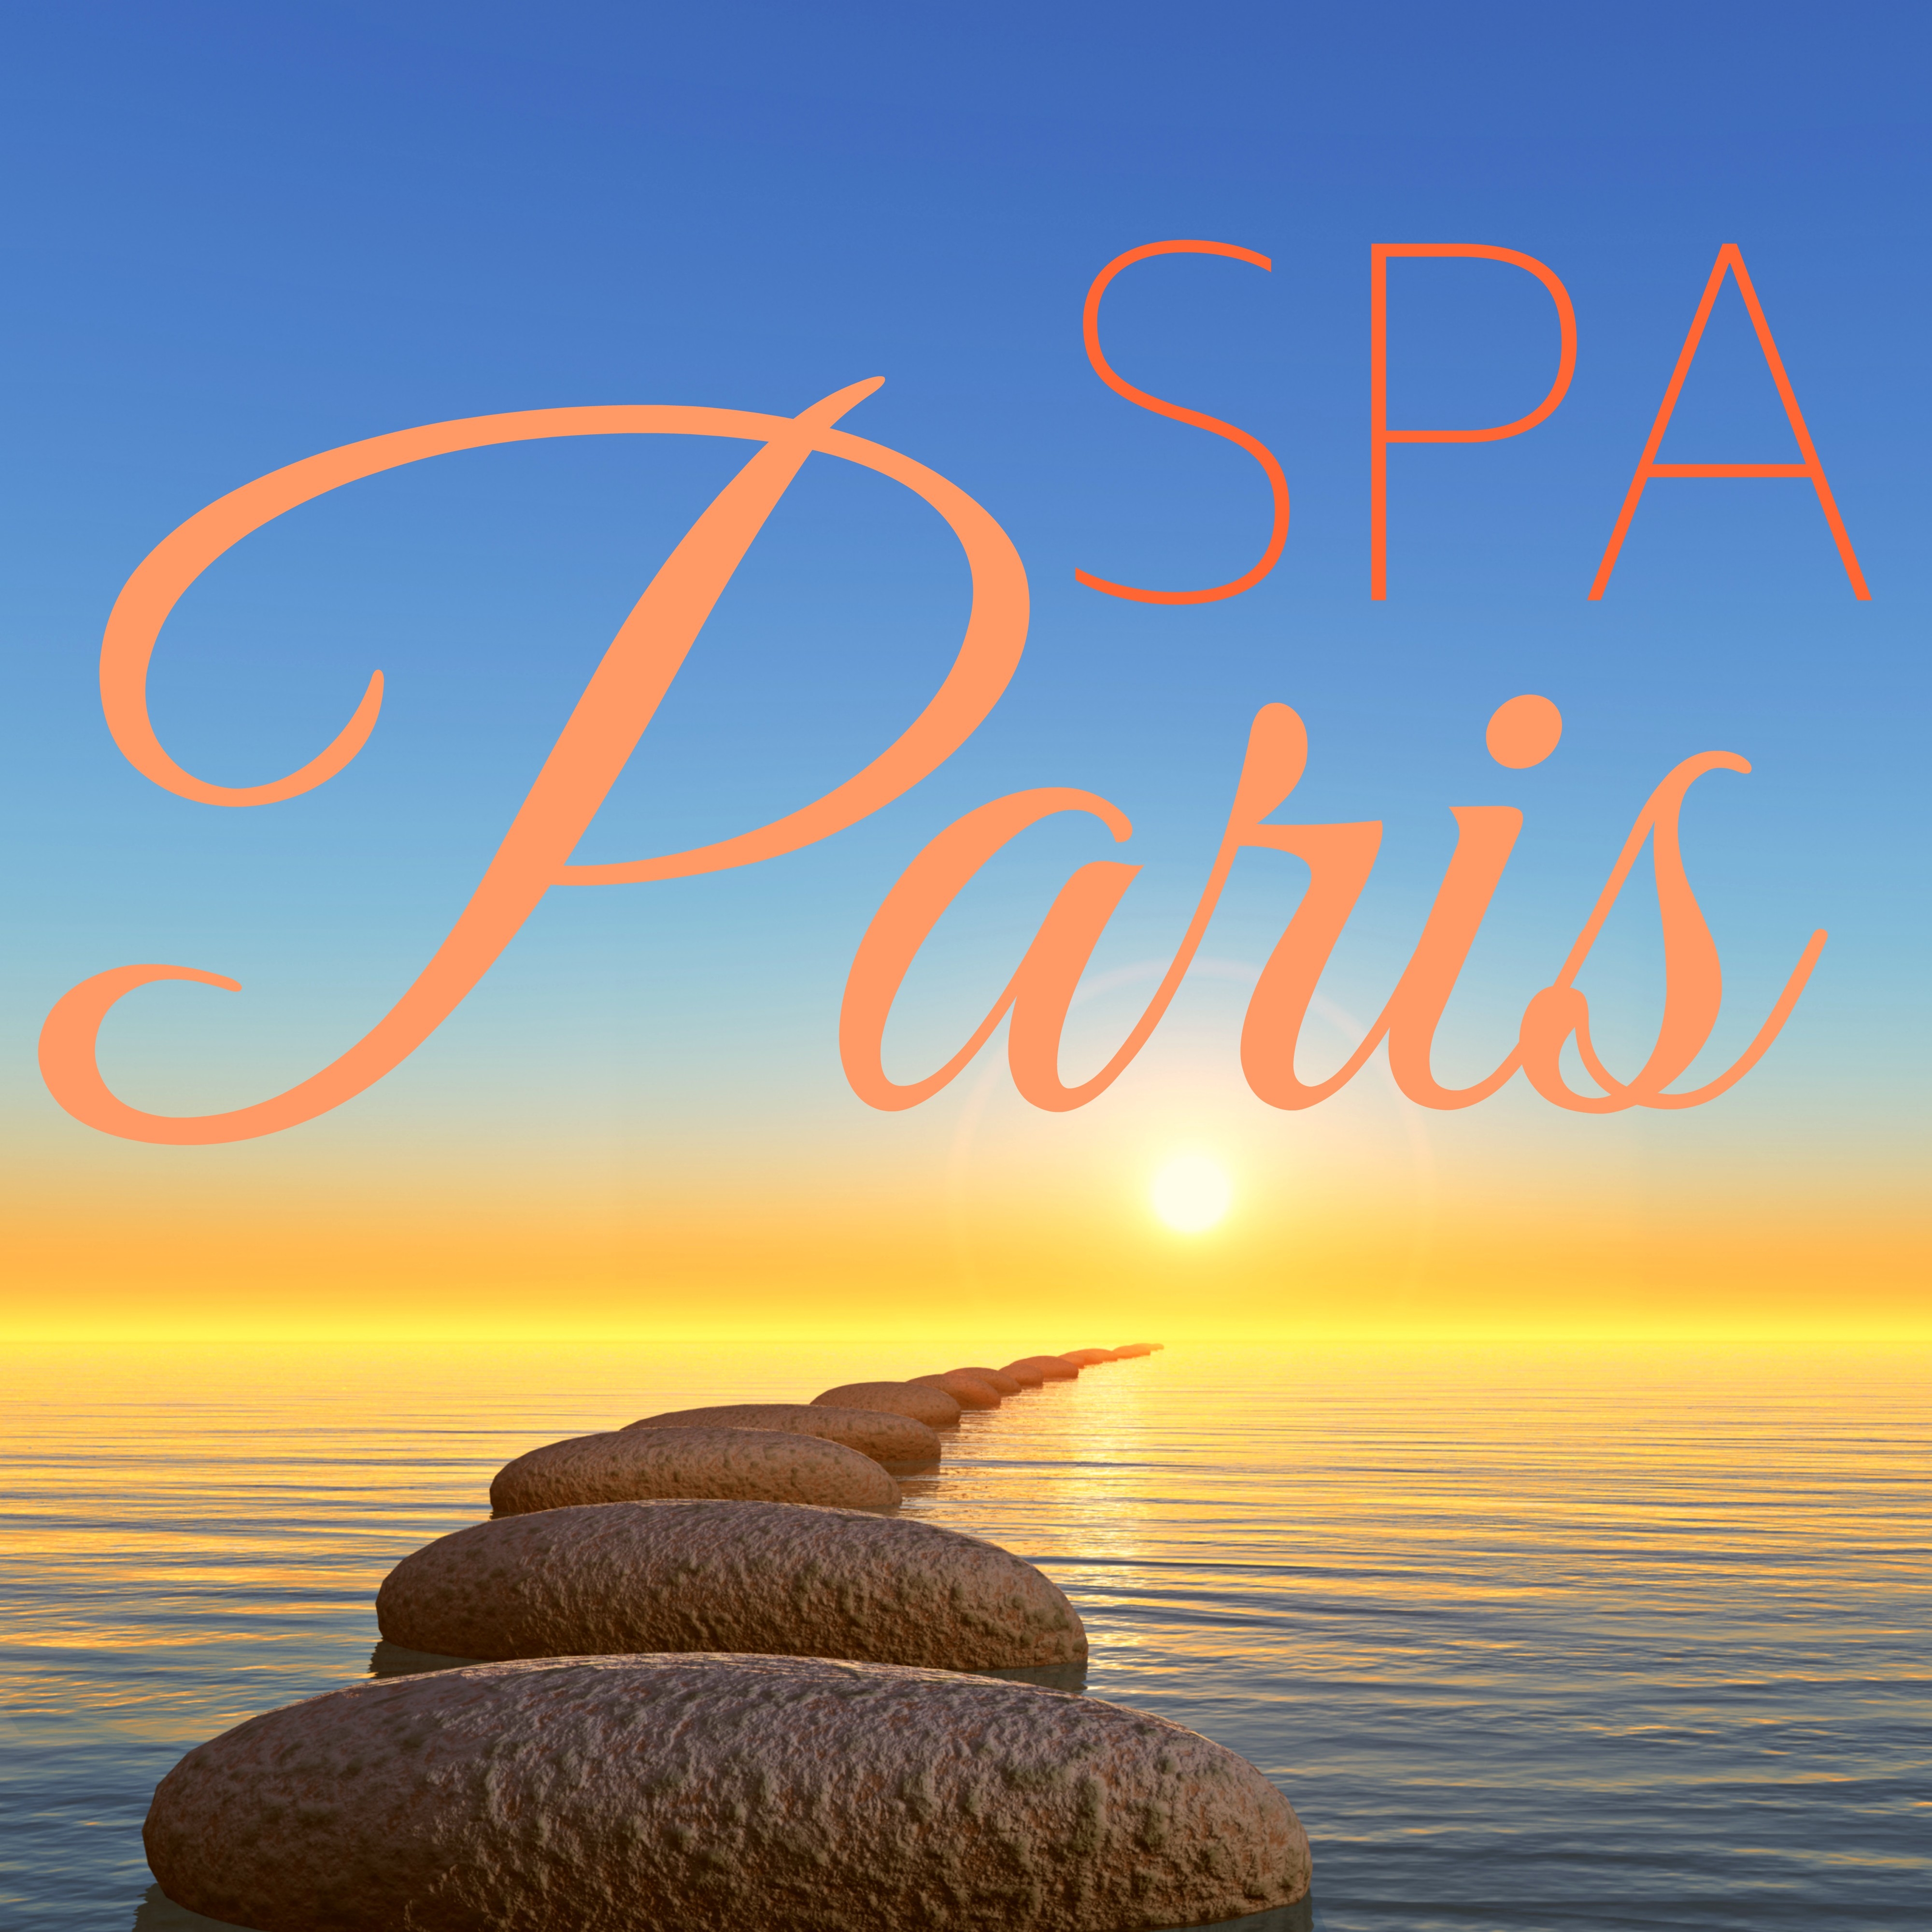 Spa Paris - Musique Massage Détente: Coffret Bien-être Anti Stress pour votre Relaxation